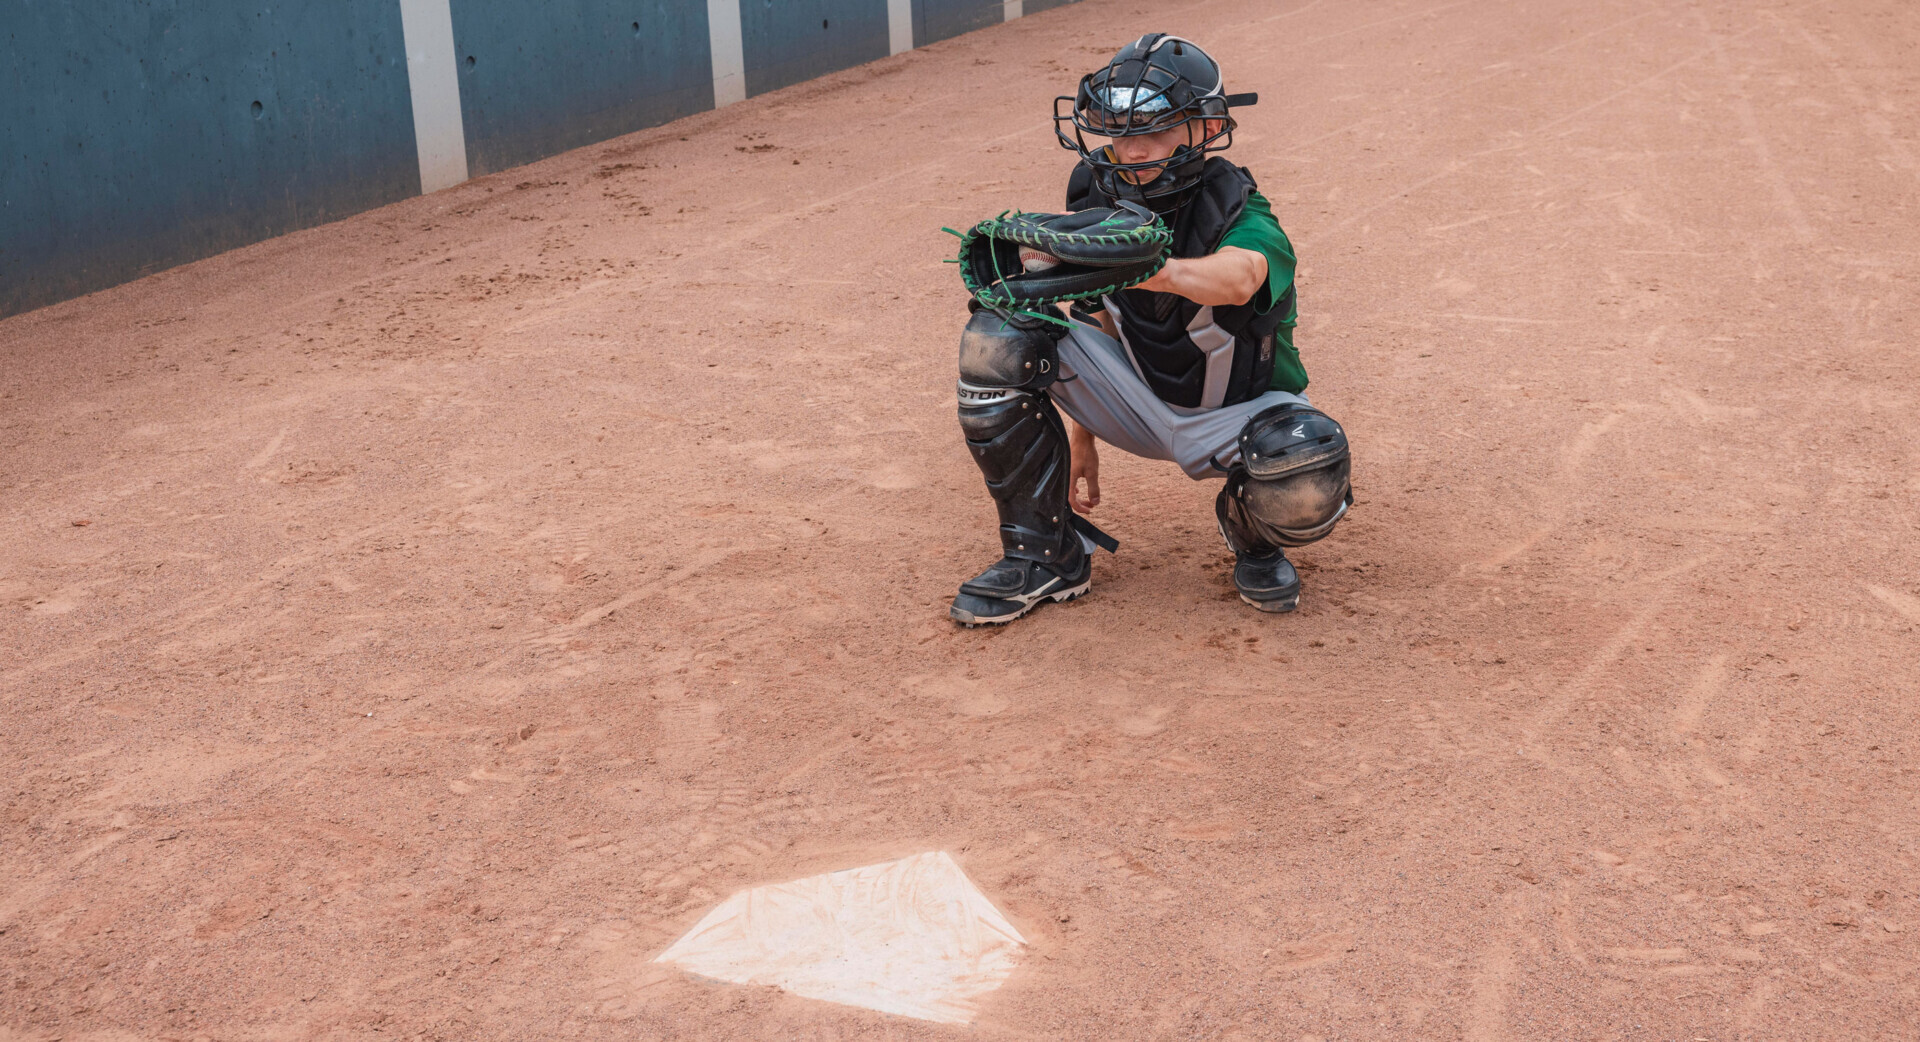 Enfants et adolescents lors de jeux et de formes d'entraînement pour le baseball et le softball. Photo : OFSPO / Charlène Mamie